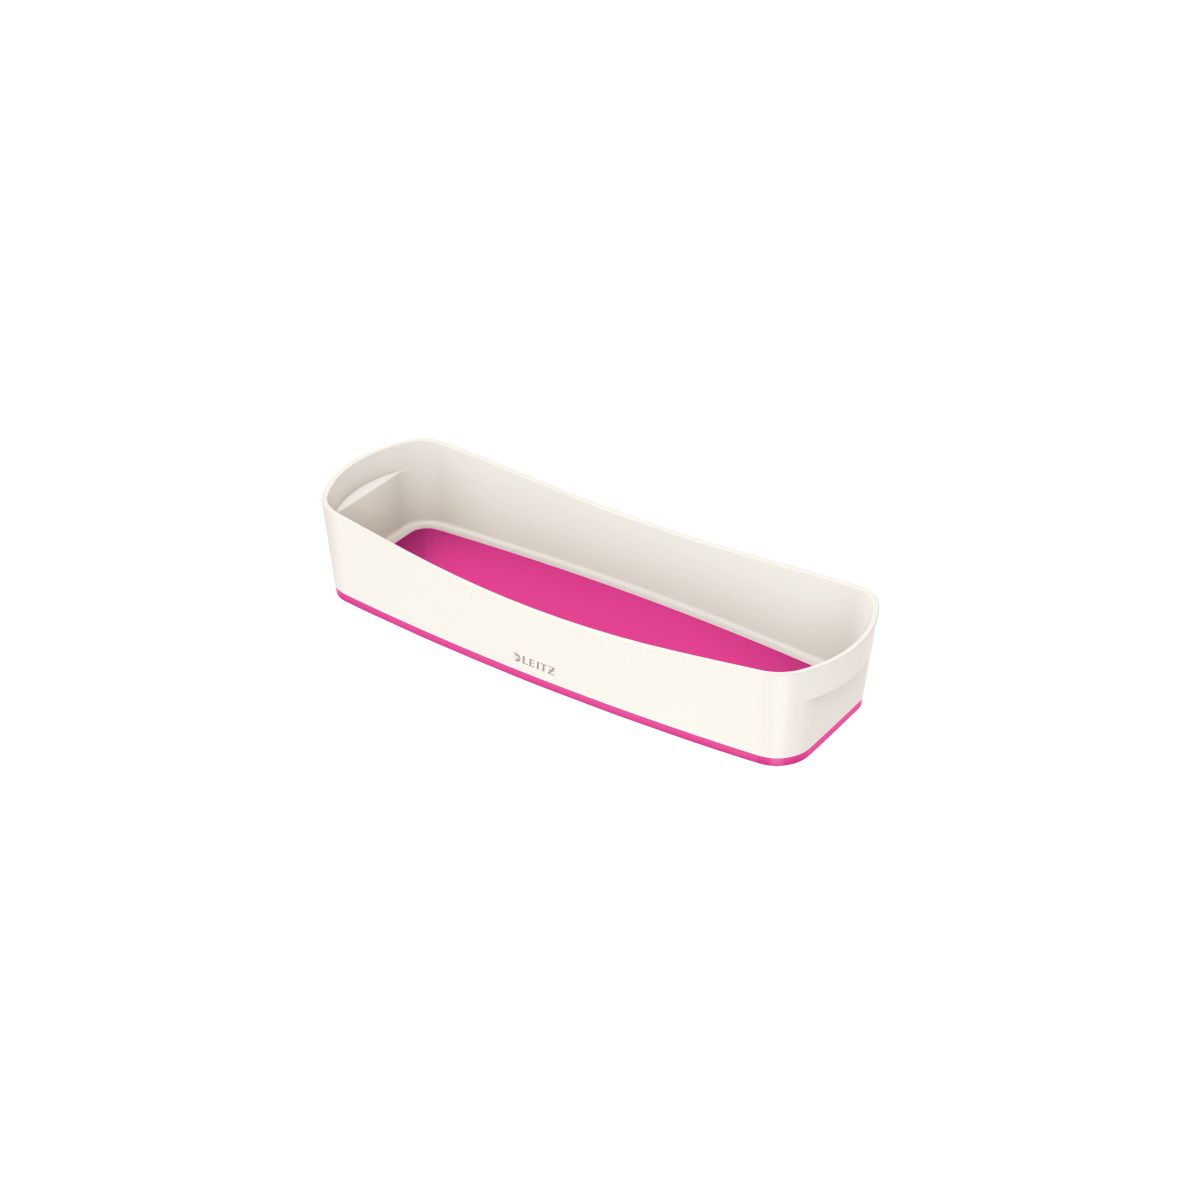 Przybornik na biurko my box organizer podłużny biało-różowy plastik Leitz (52581023)